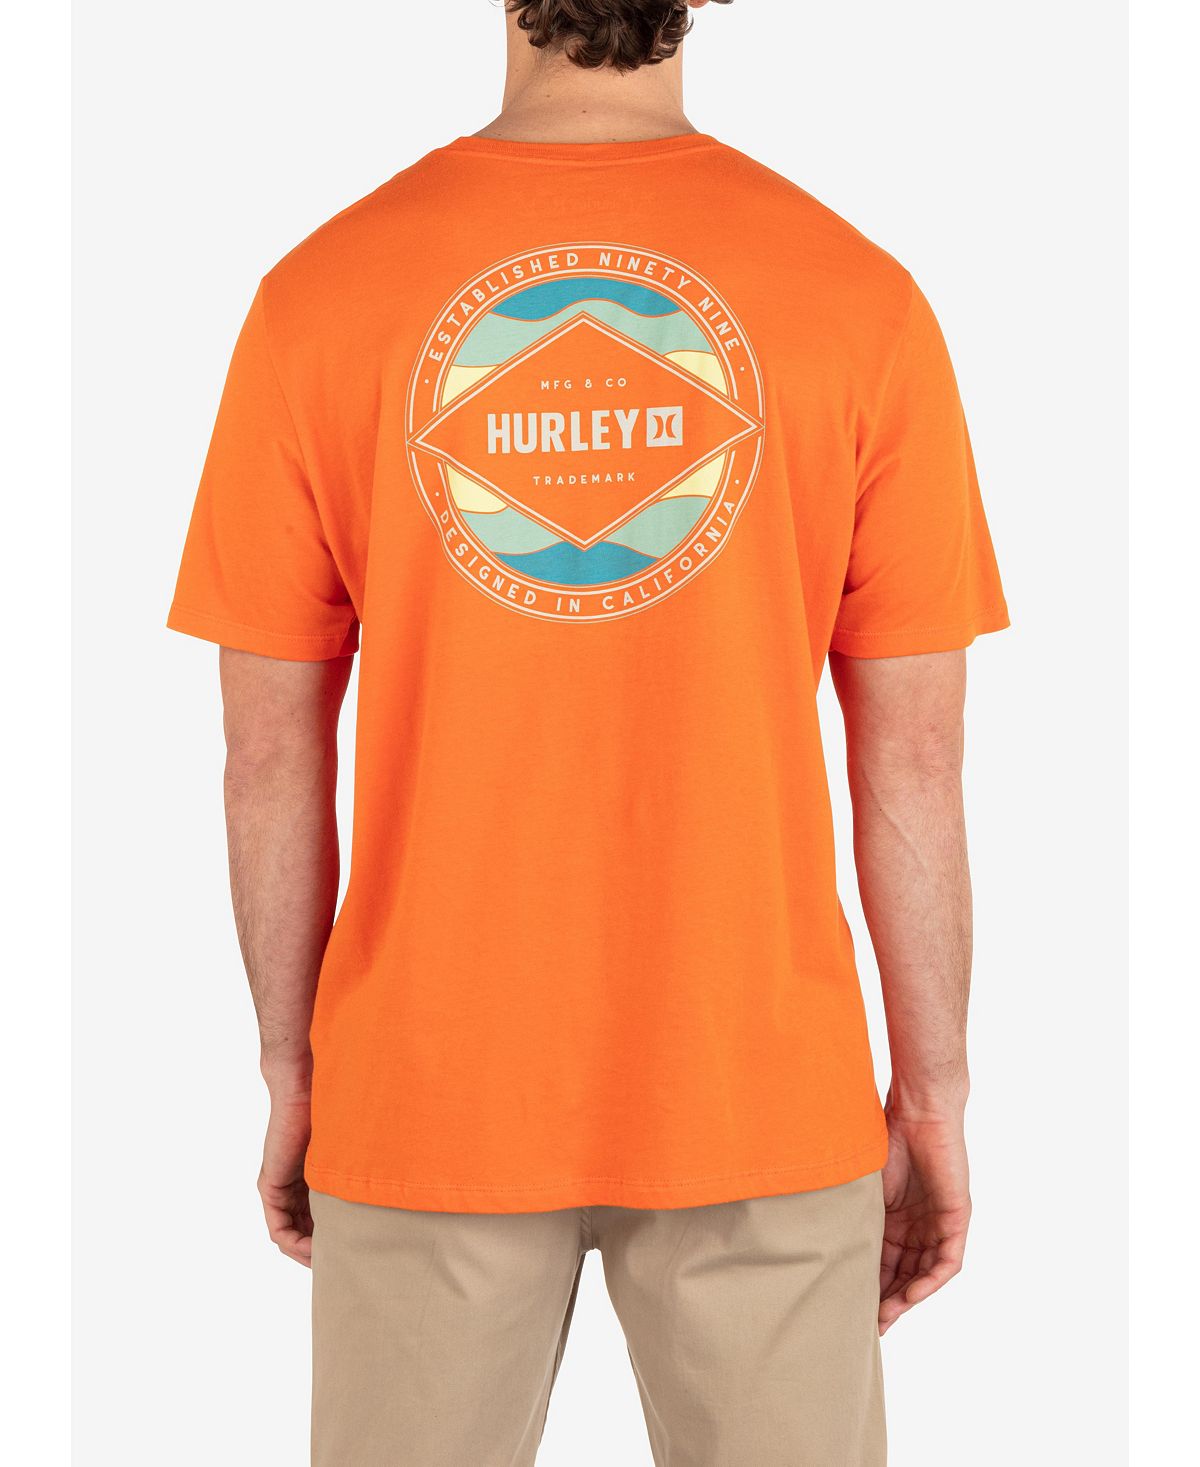 Мужская повседневная волнистая футболка с коротким рукавом Hurley мужская повседневная футболка с коротким рукавом для укулеле hurley тан бежевый